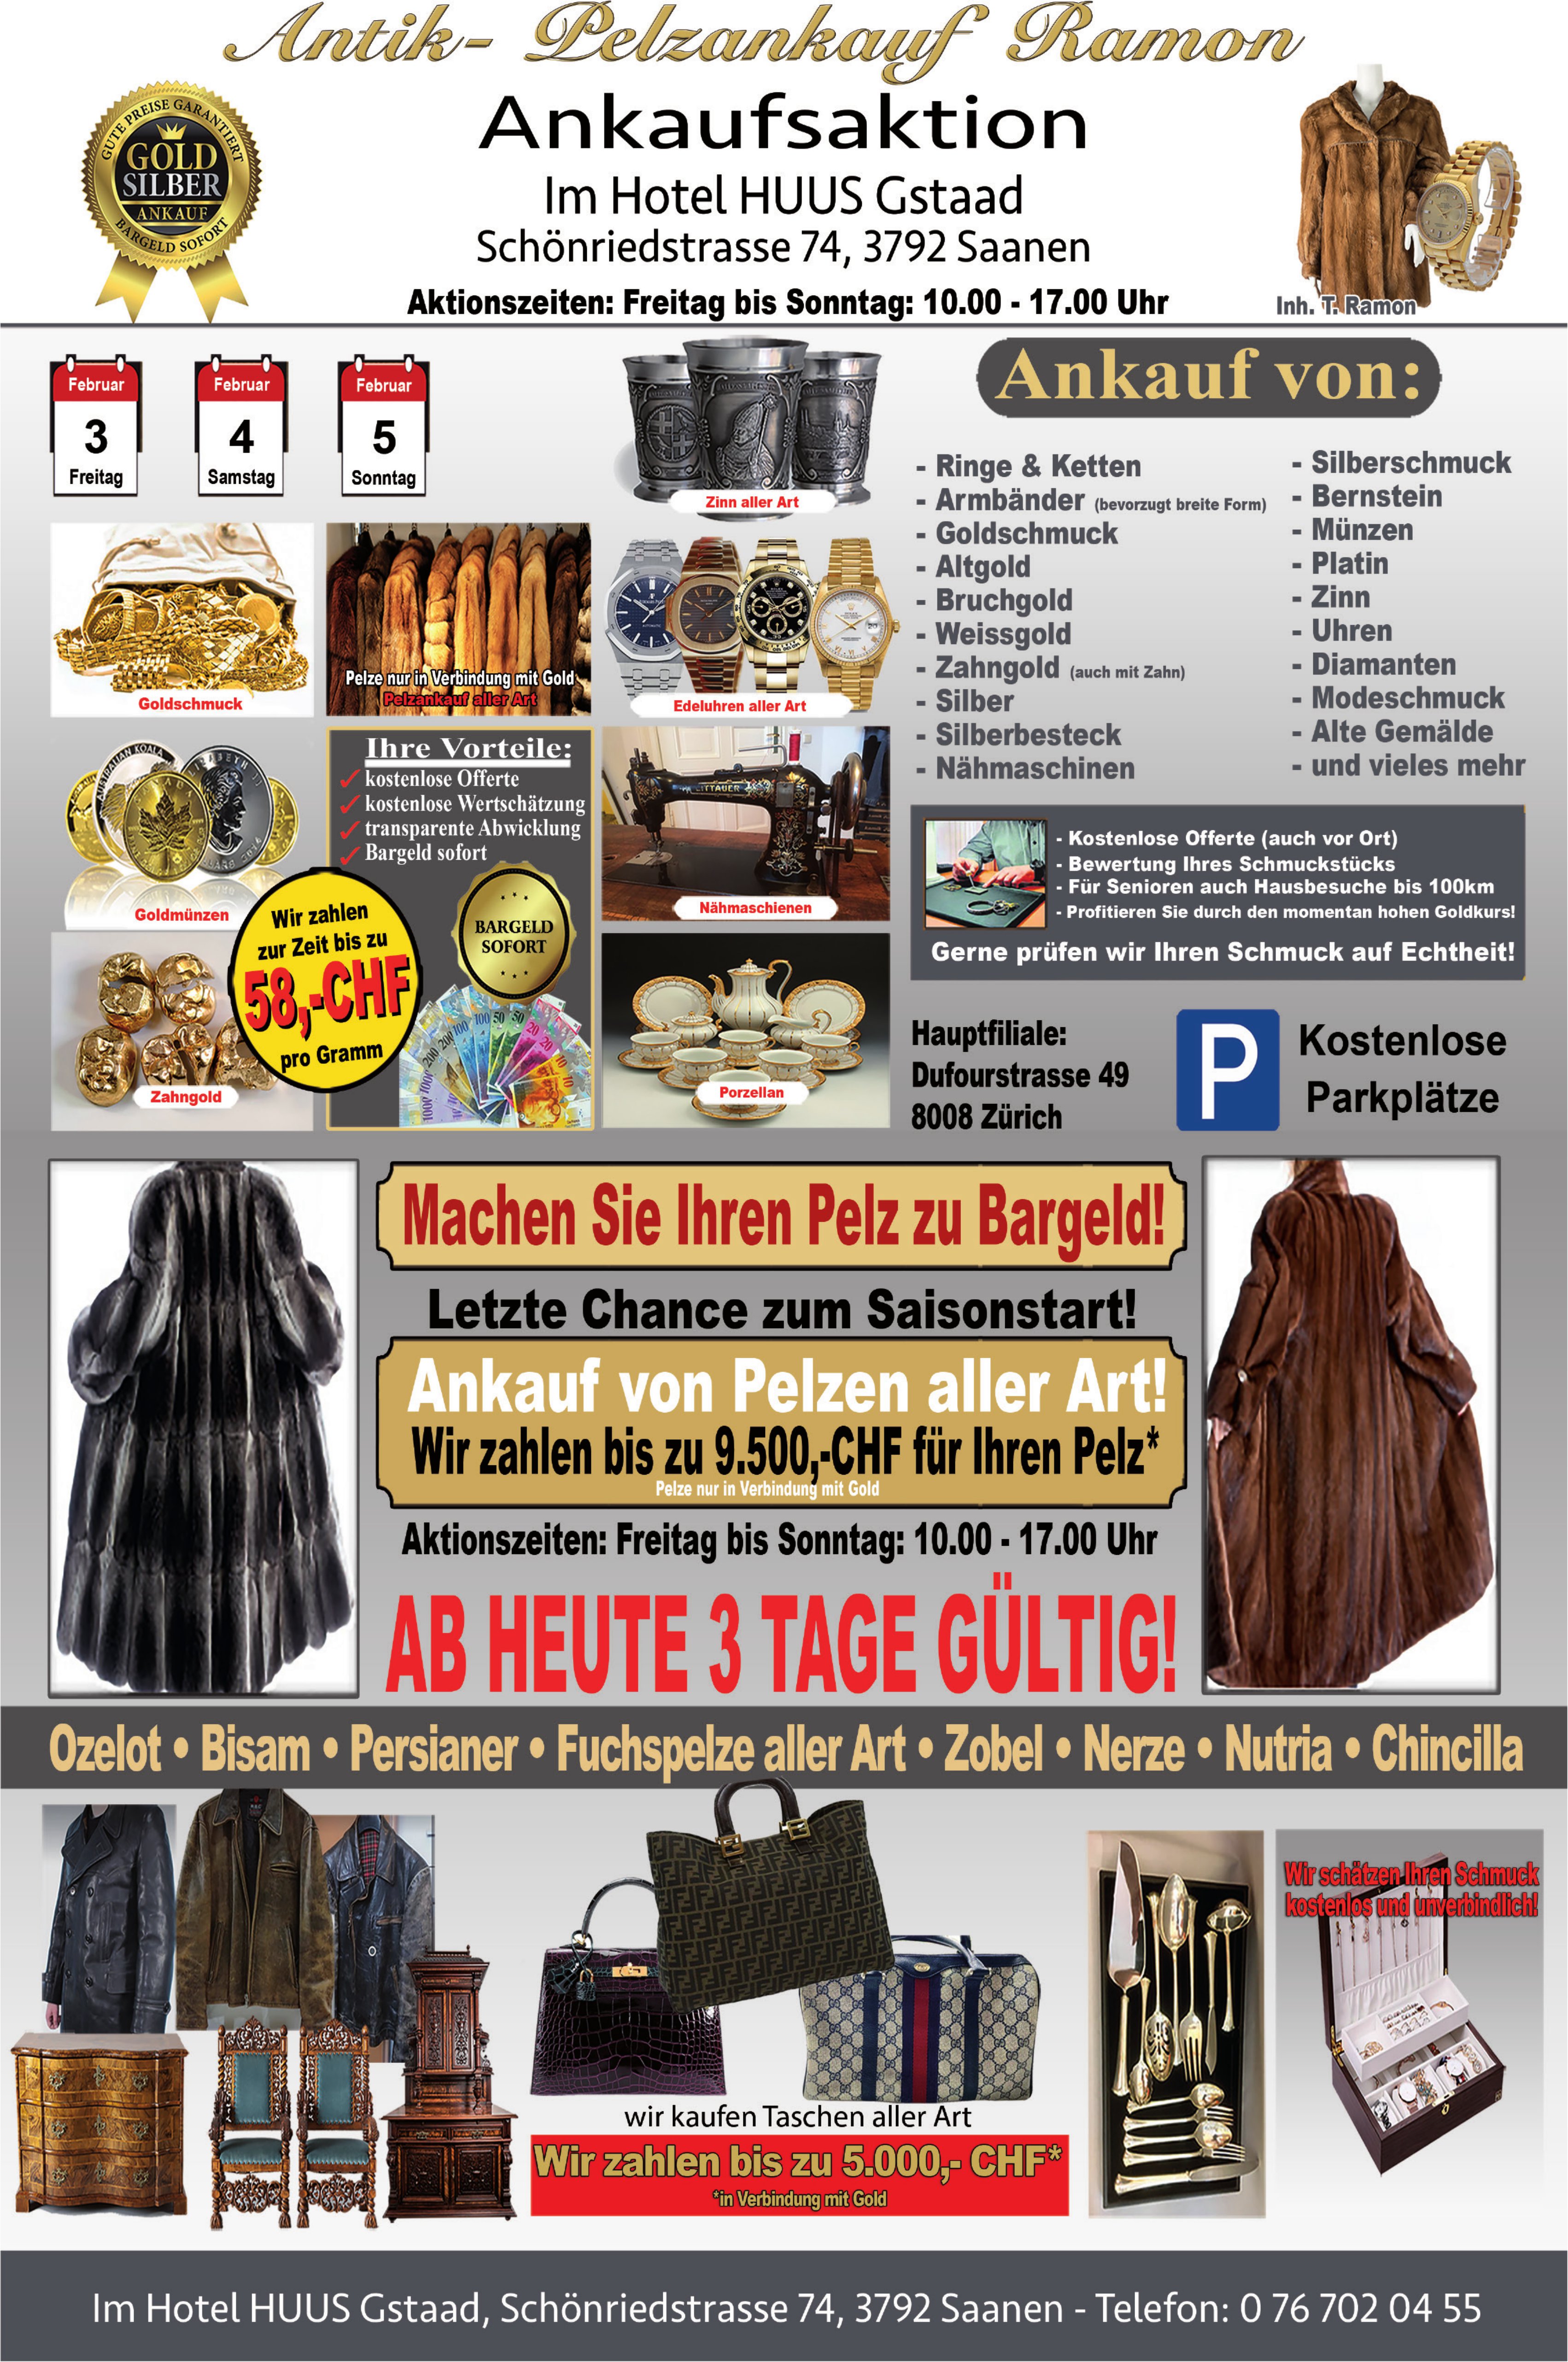 Ankaufsaktion Antik- und Pelzankauf Ramon, 3. - 5. Februar, Hotel Huus Gstaad, Saanen